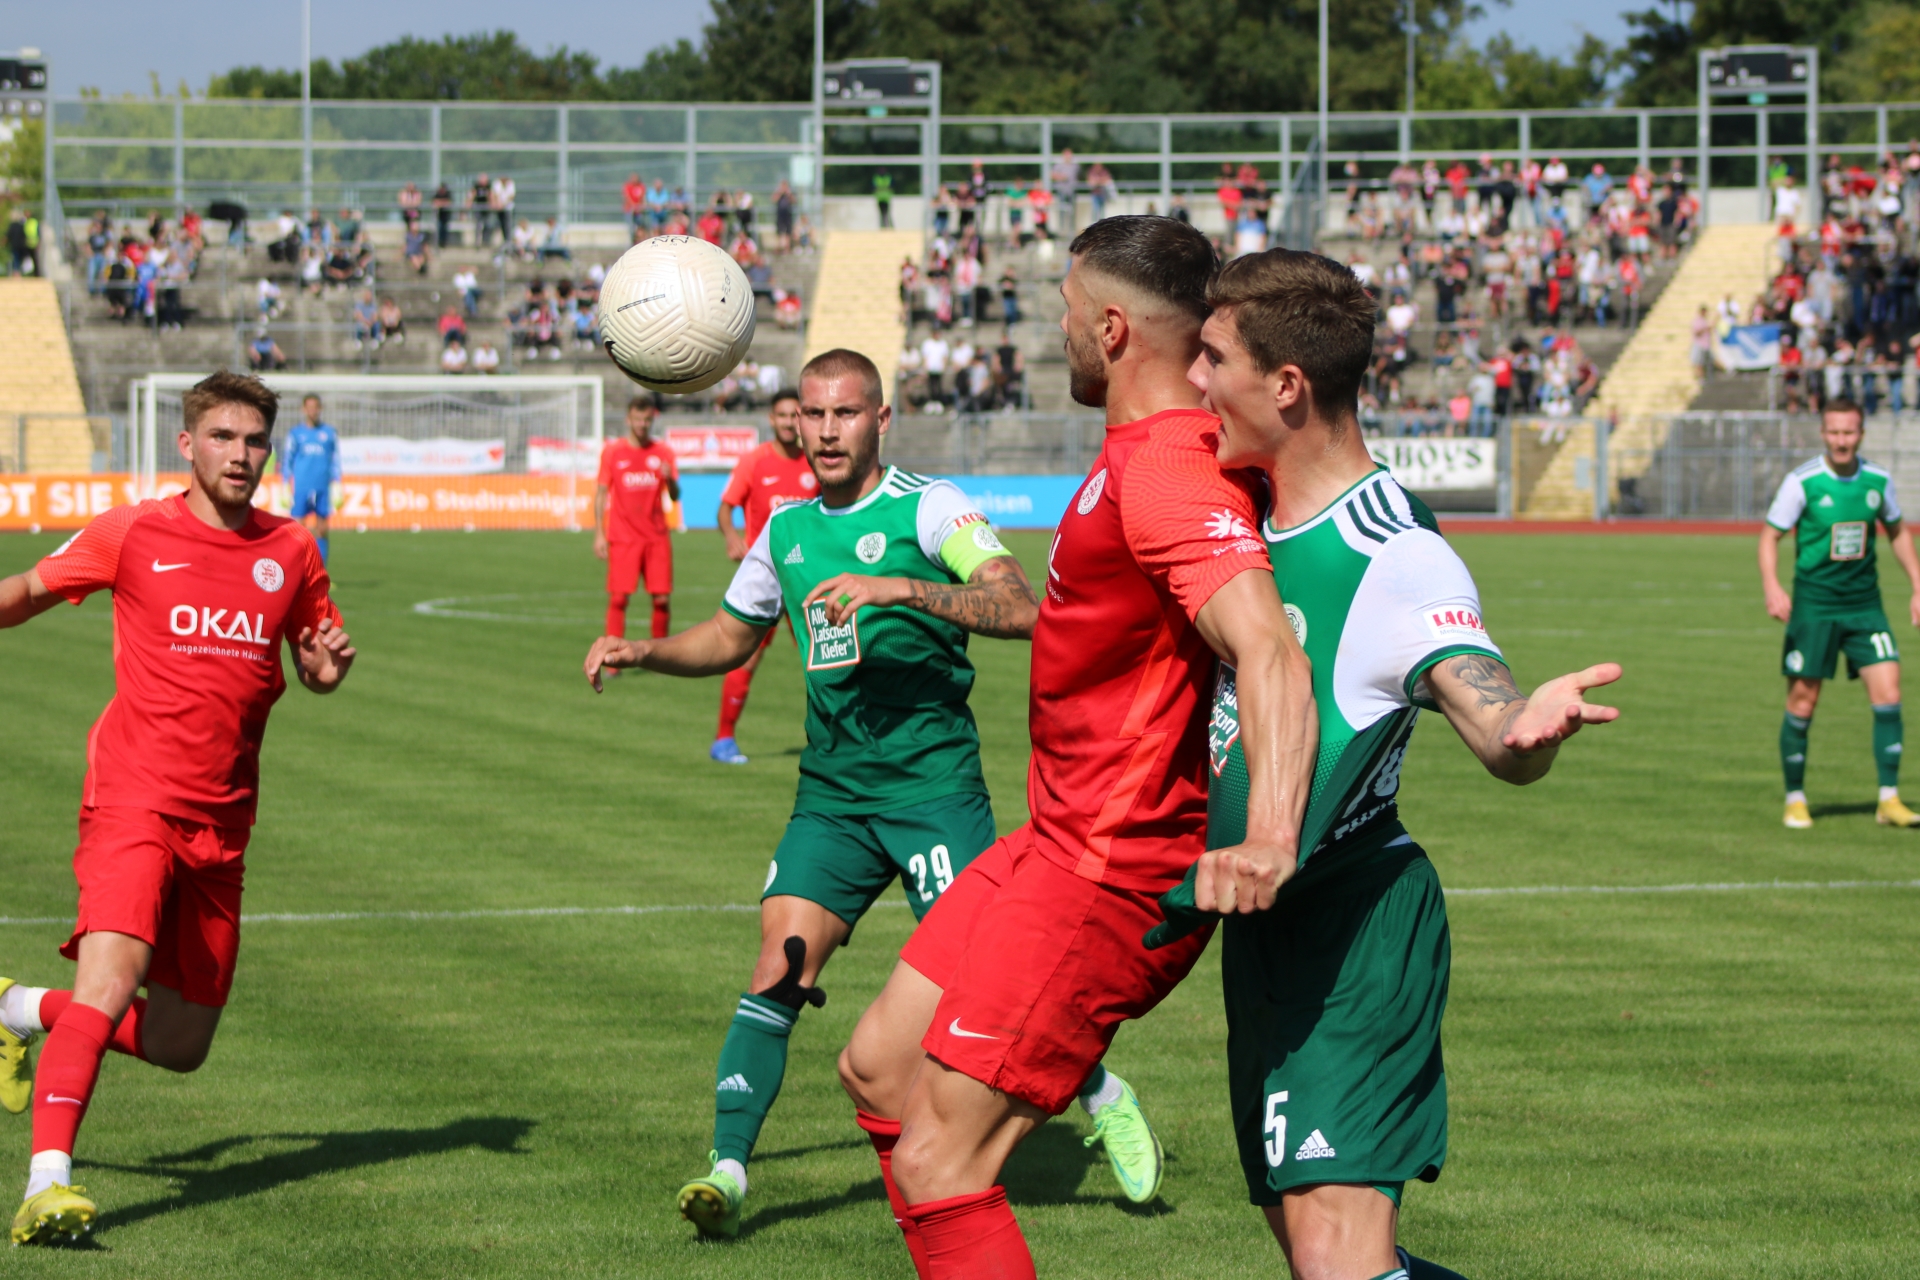 KSV Hessen Kassel - FC 08 Homburg